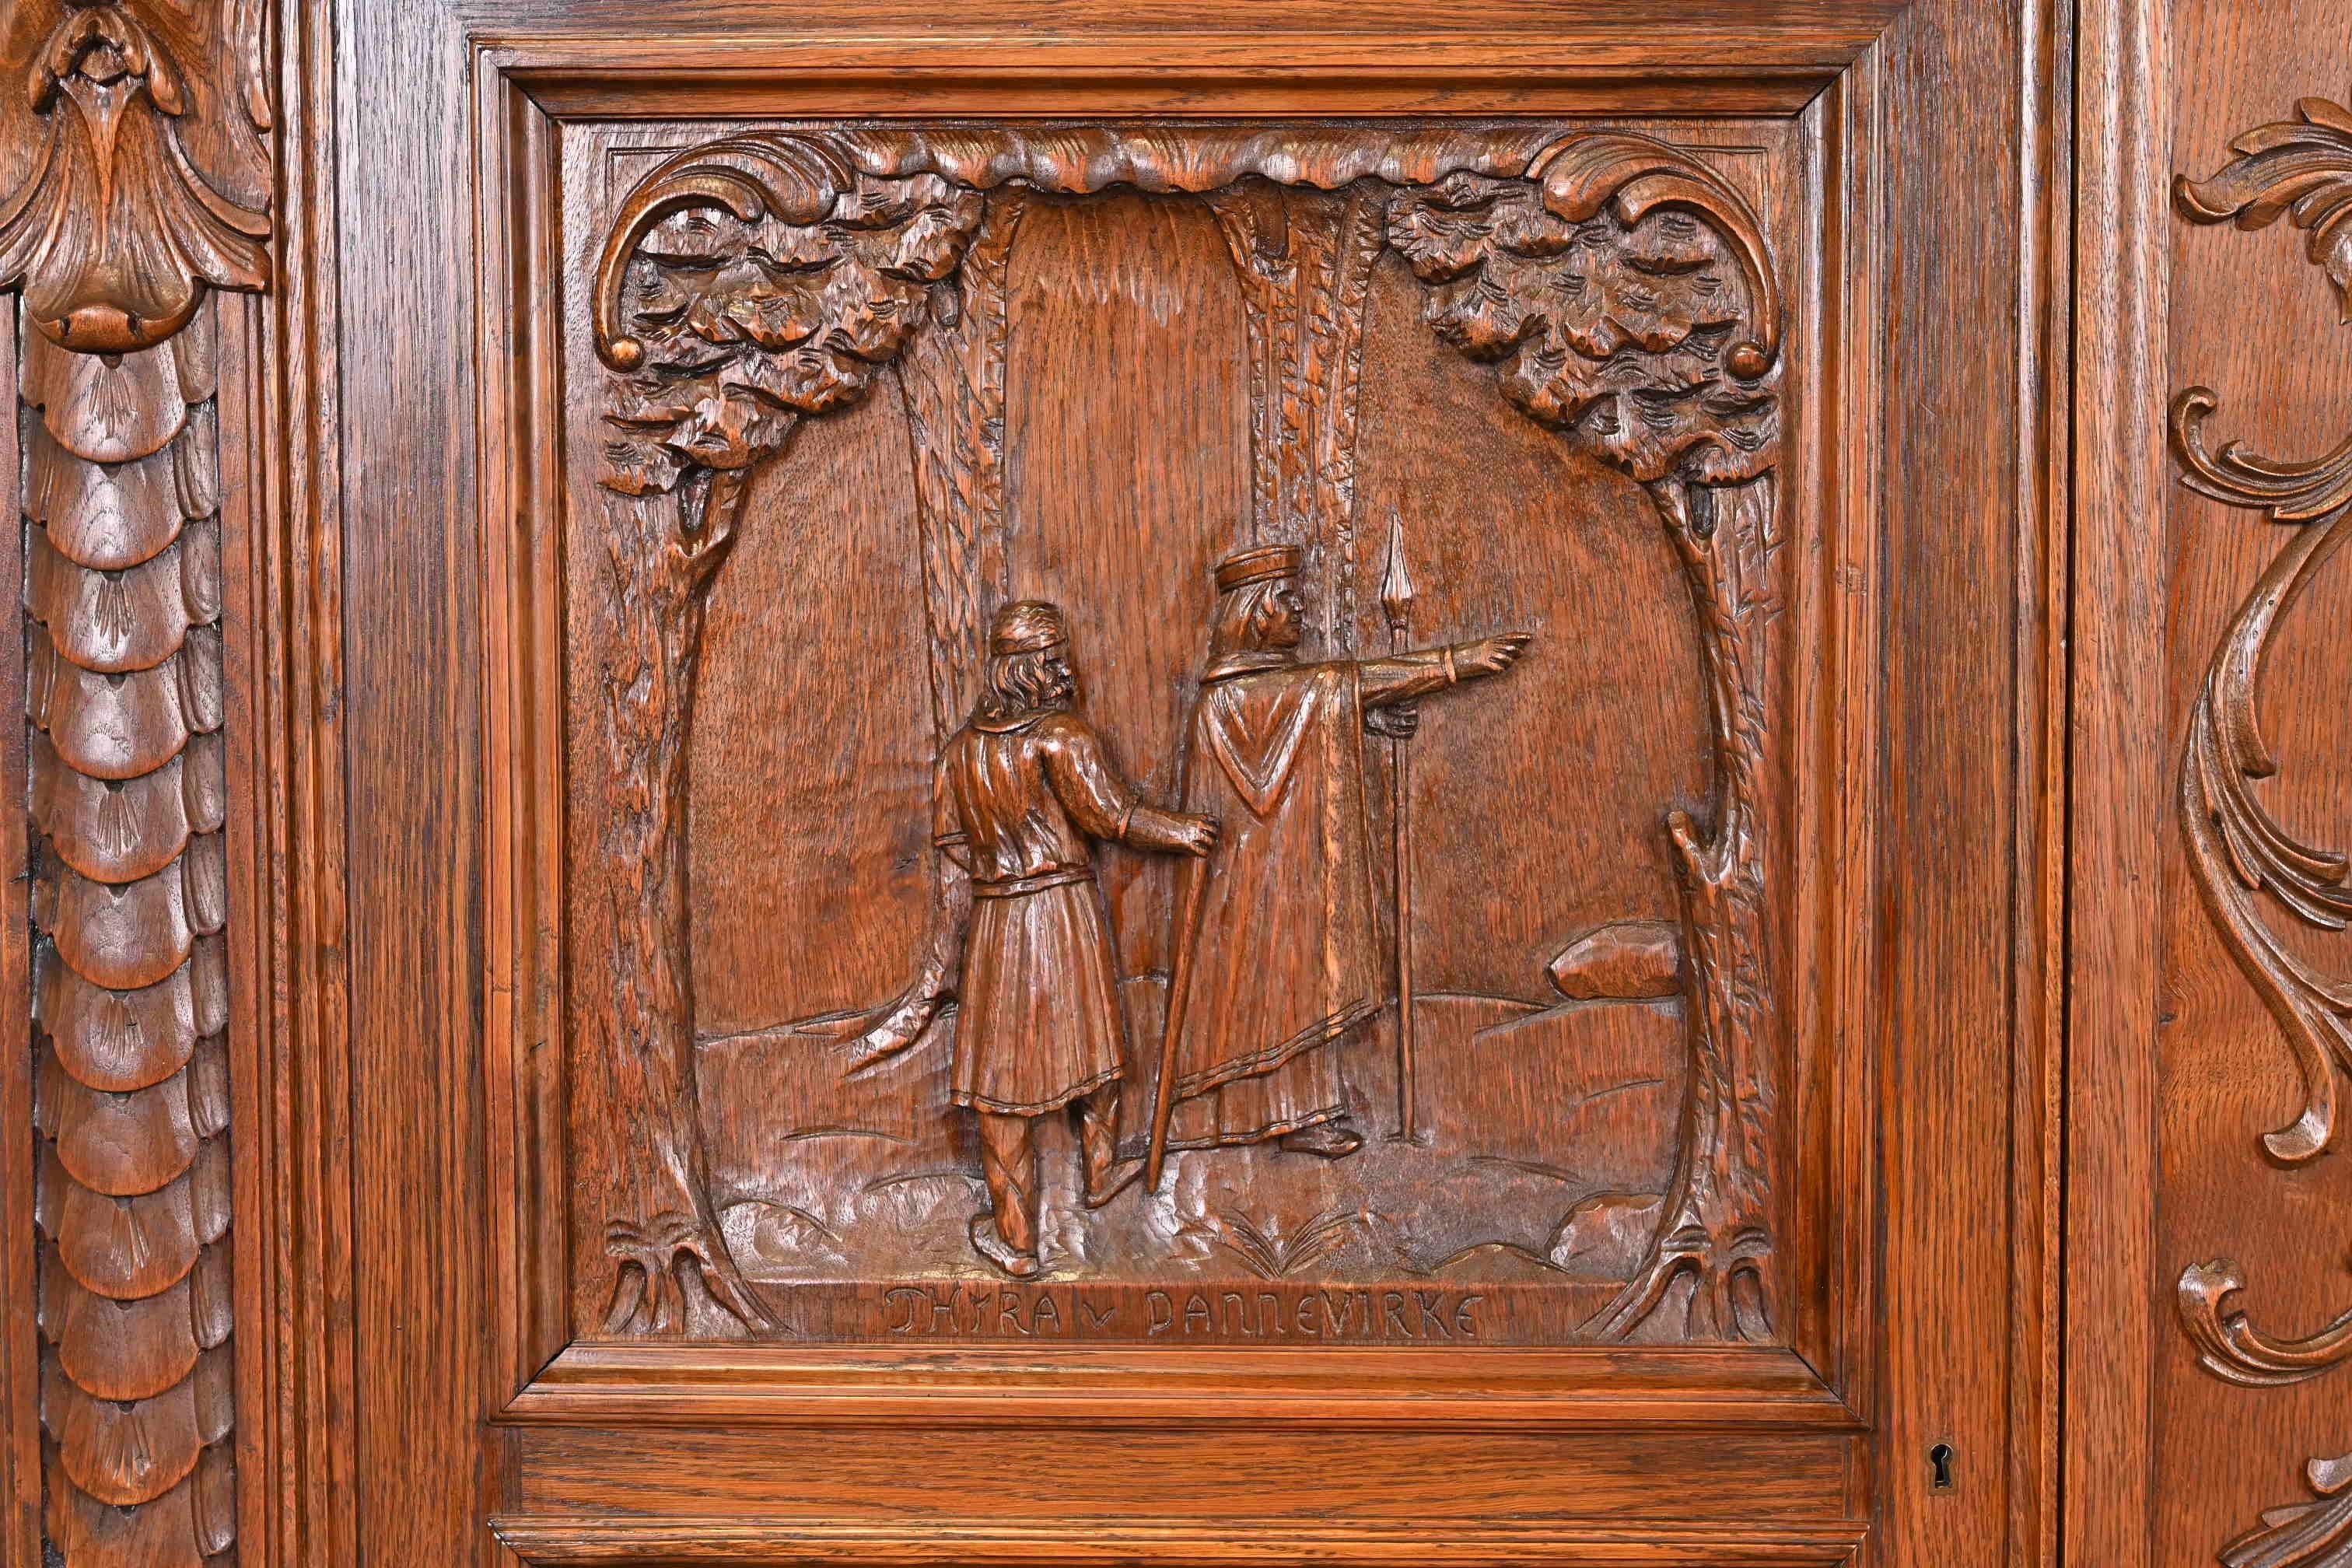 Antique Danish Renaissance Revival Ornate Carved Oak Sideboard or Bar Cabinet 4